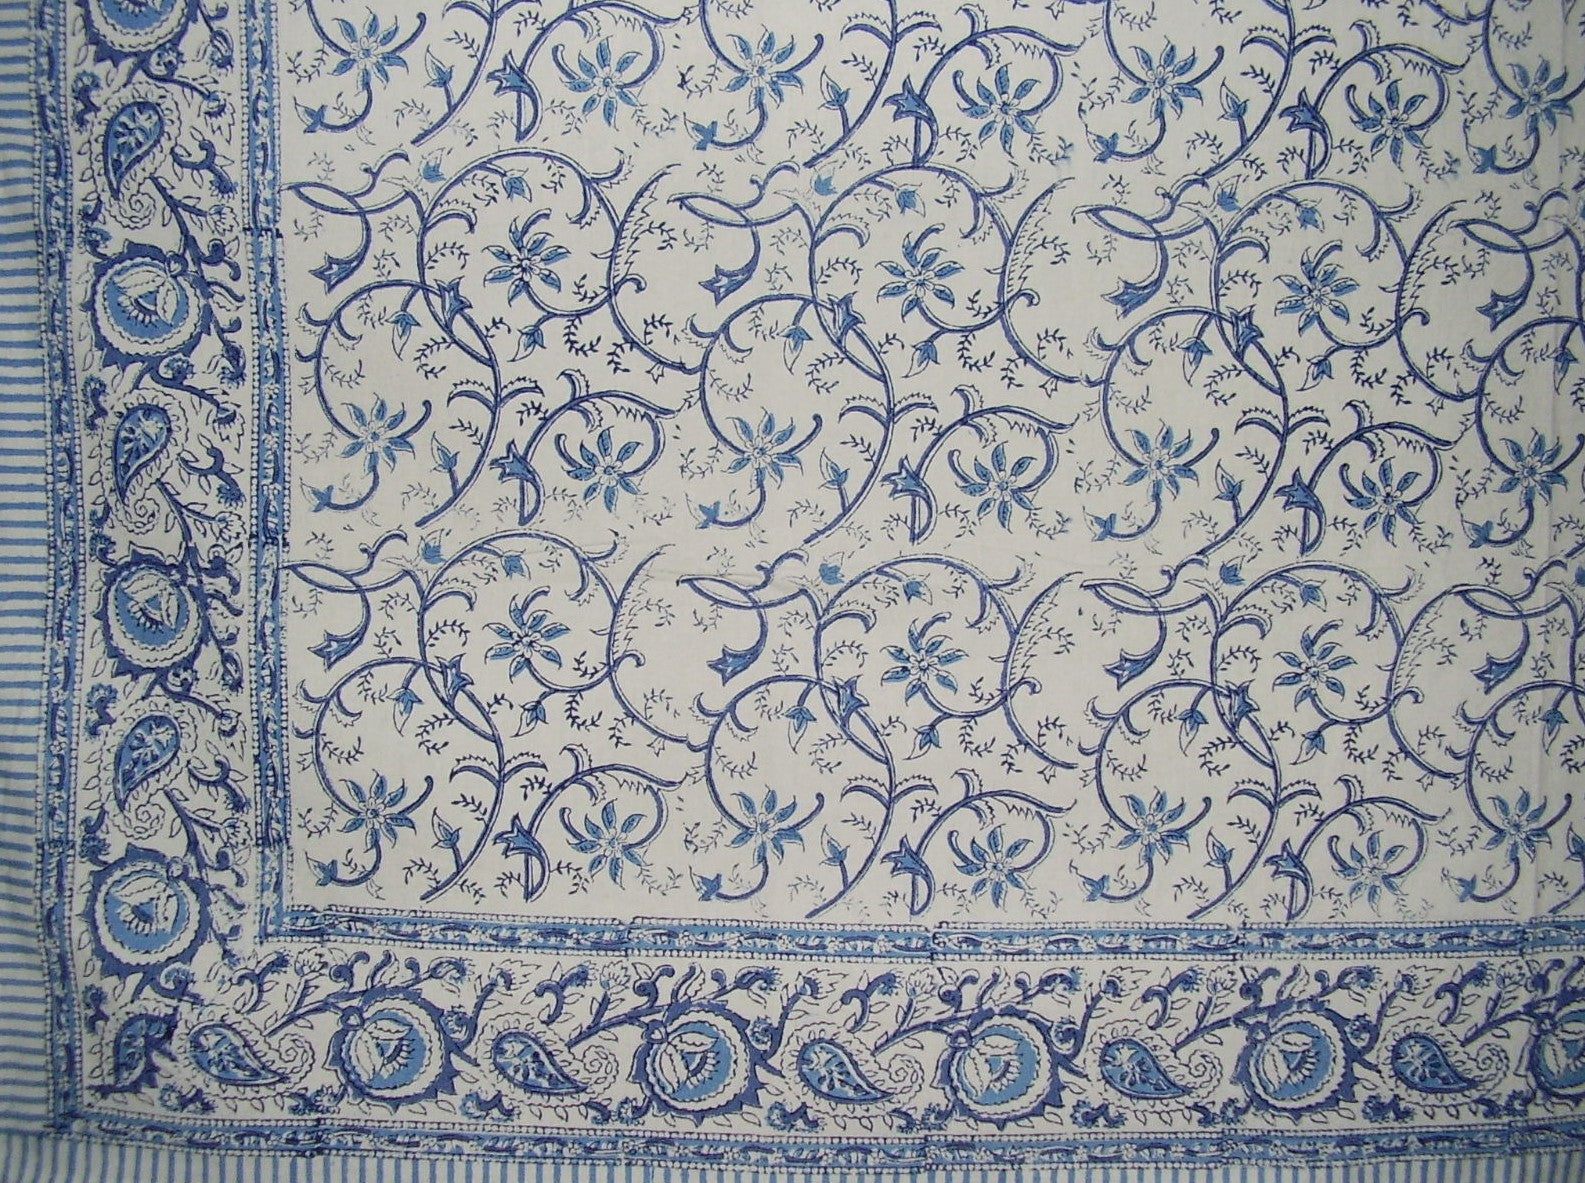 版畫拉賈斯坦藤蔓方形棉質桌布 60 英吋 x 60 英吋藍色